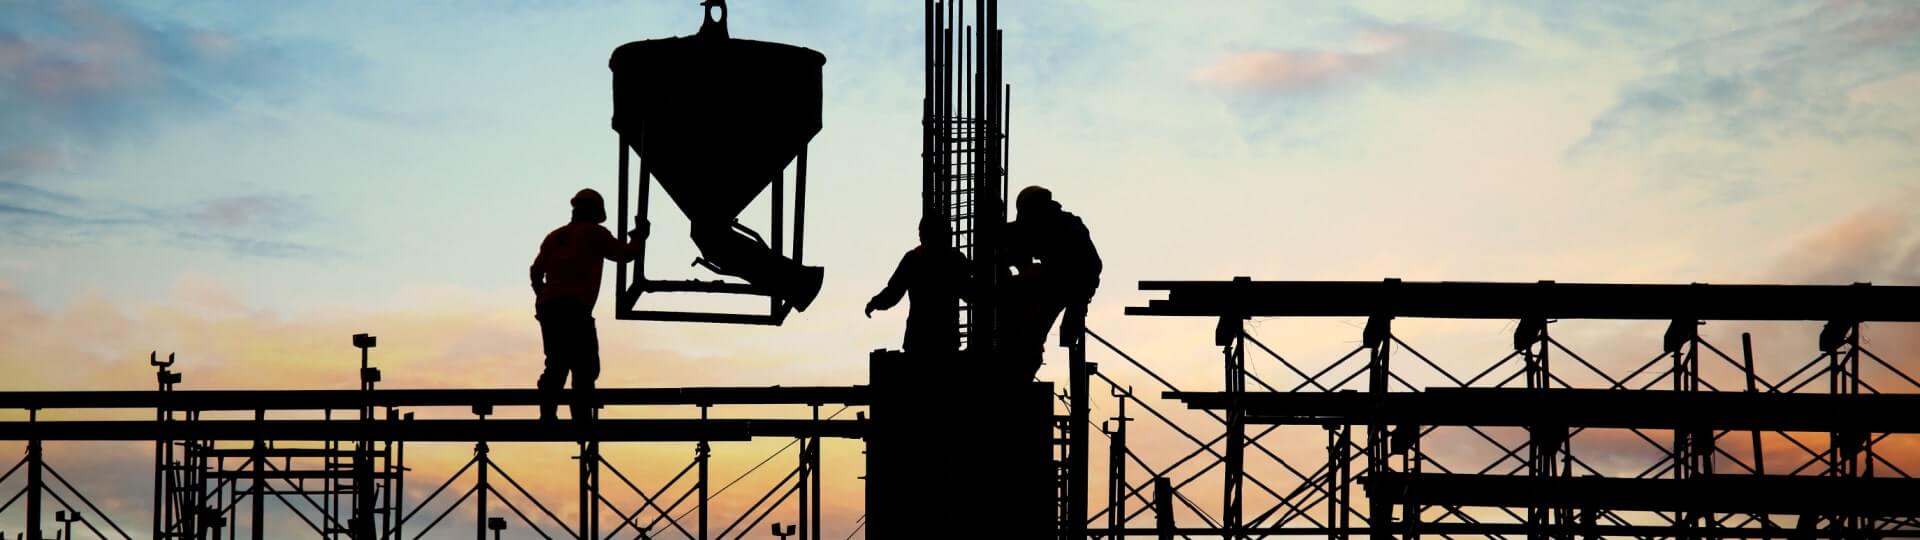 Stavební produkce v loňském roce vzrostla o 1,9 procenta